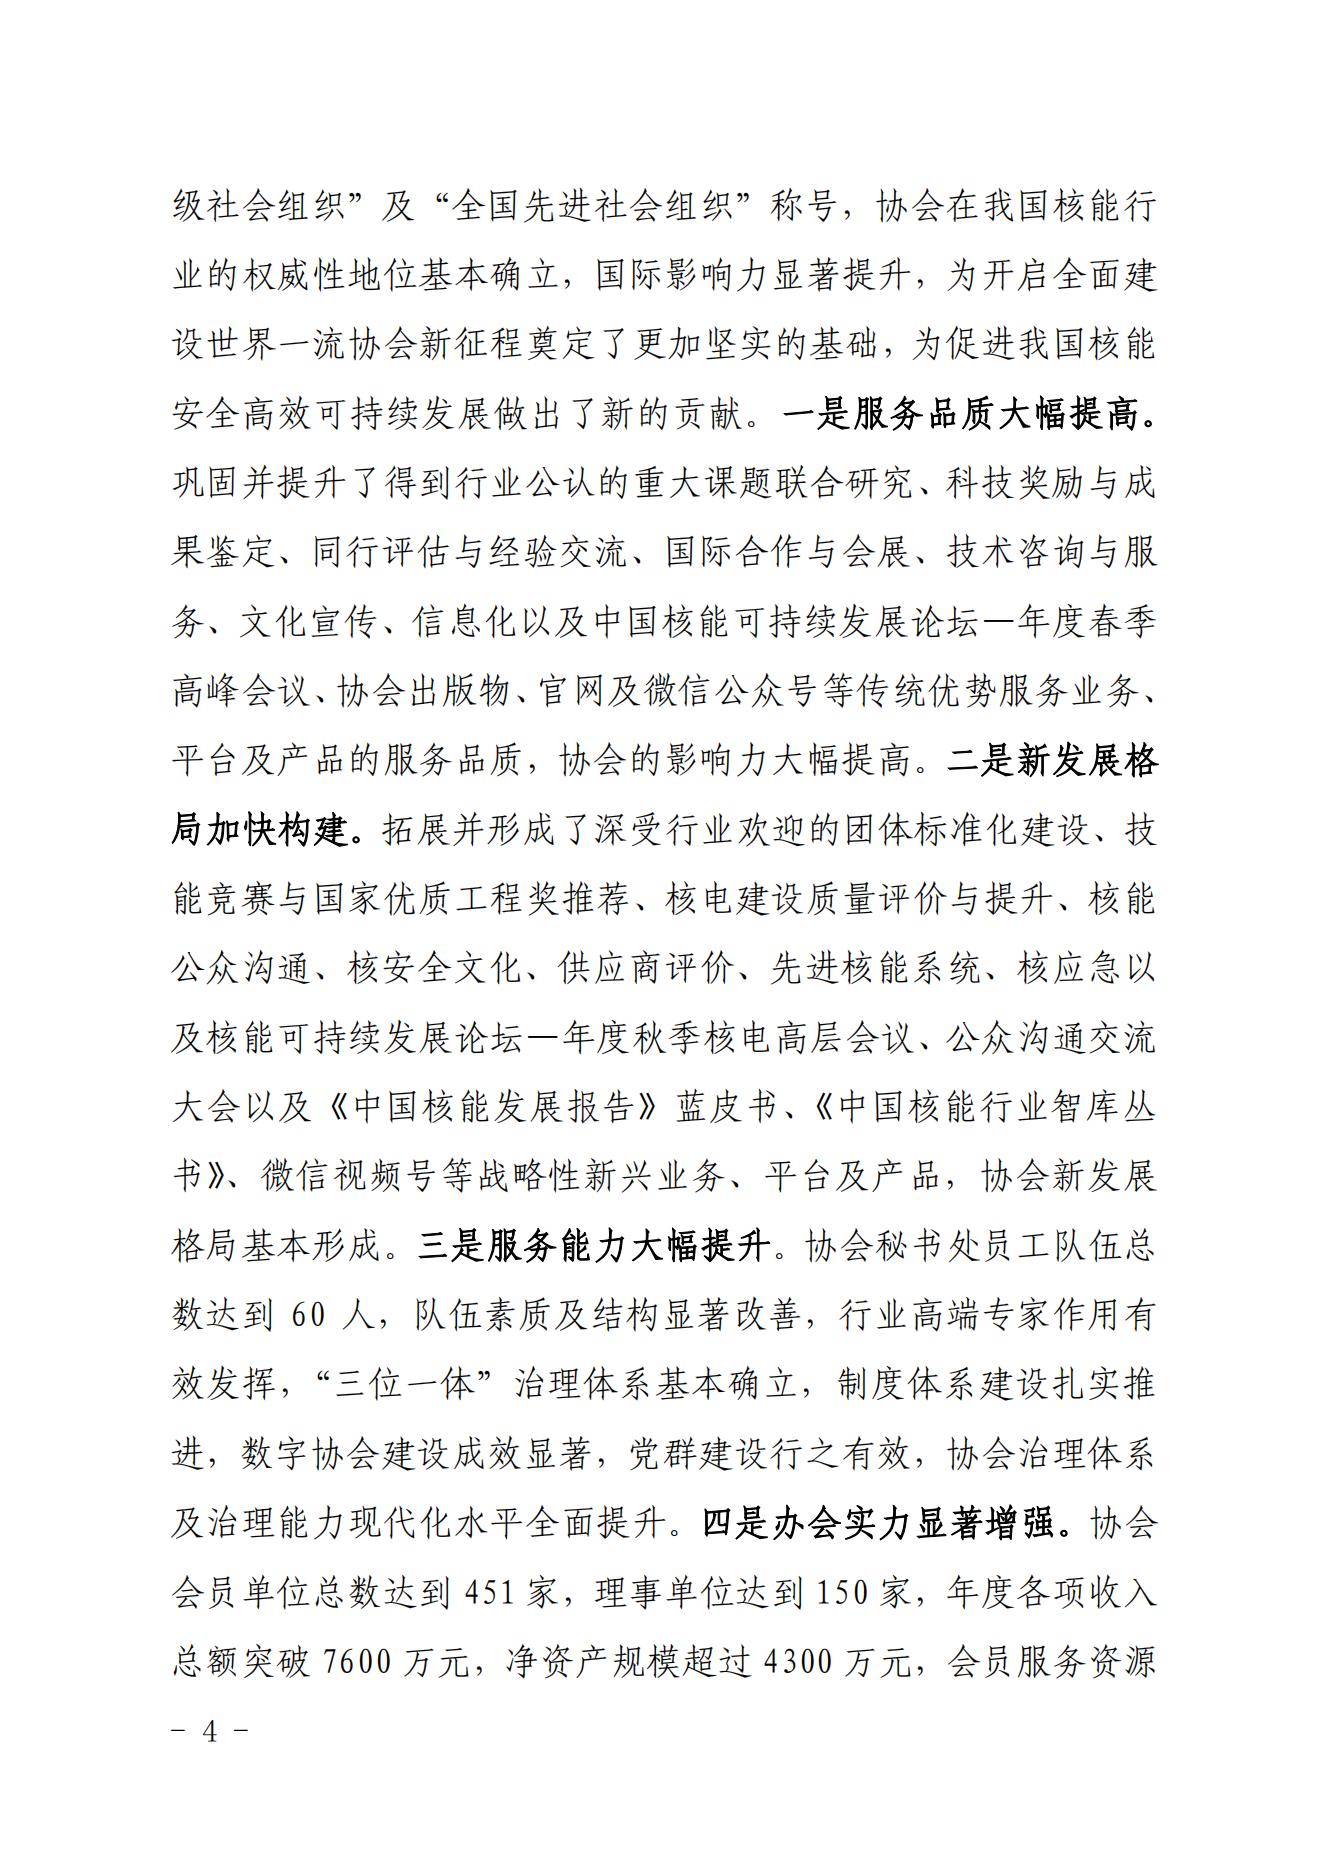 关于印发《中国核能行业协会“品牌协会成长计划”实施方案》的通知_03.jpg